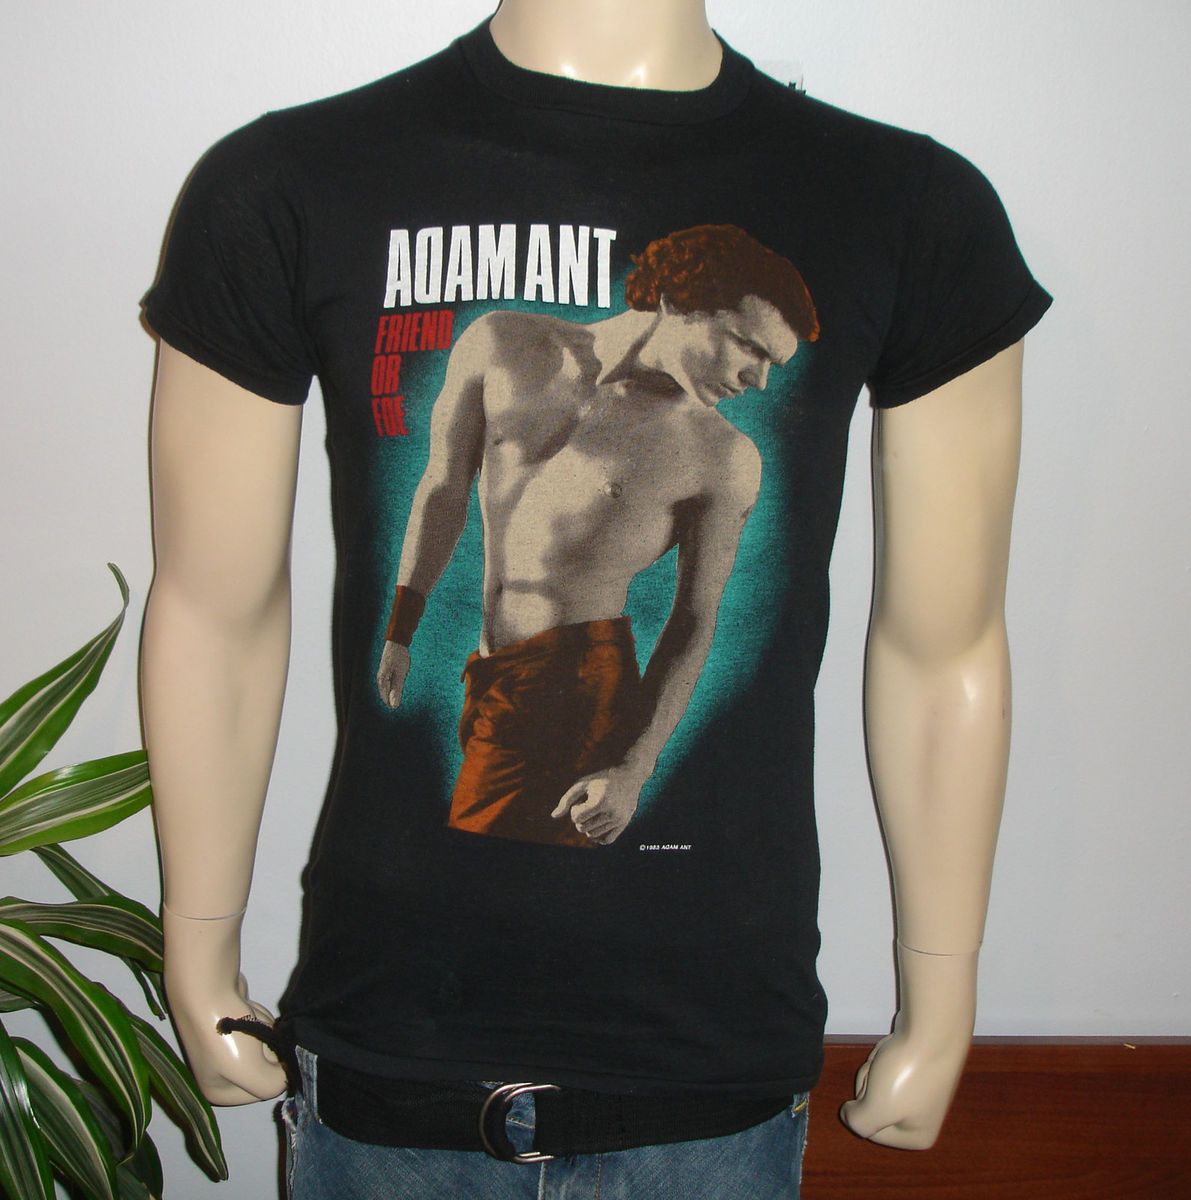 RaRe 1983 ADAM ANT vintage rock concert tour t shirt M 80s new wave 